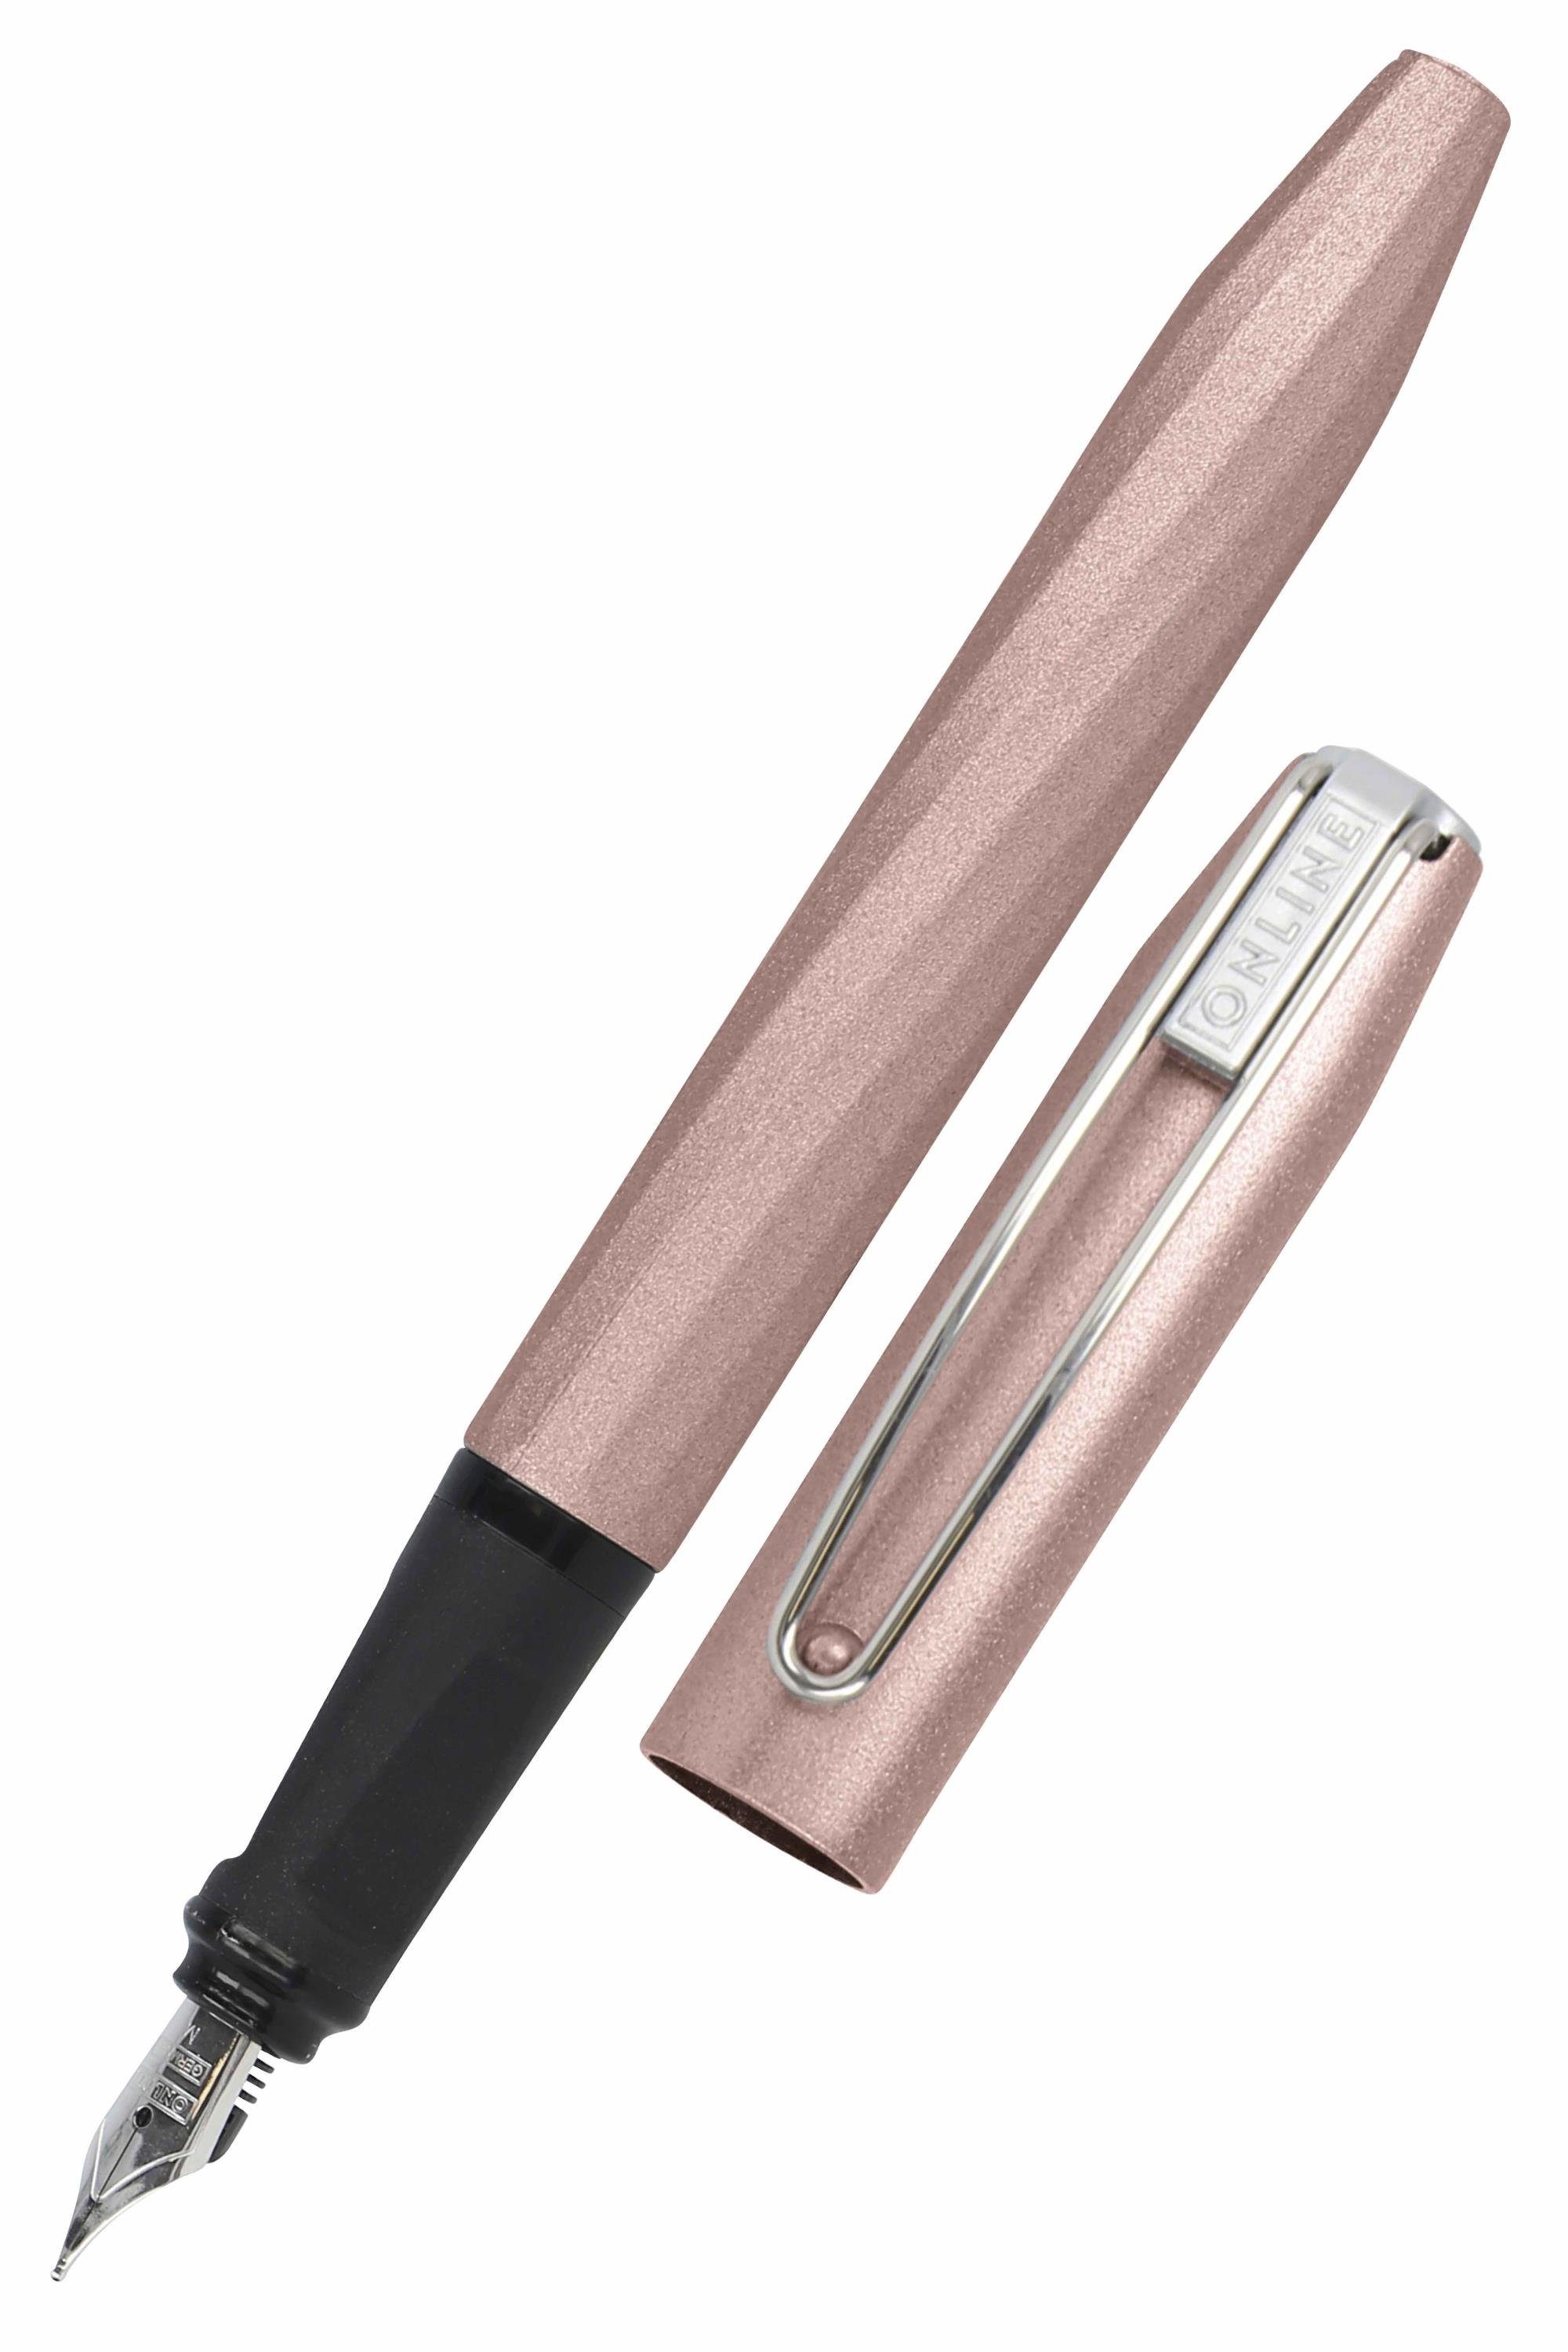 Online Pen Füller Slope, ergonomisch, ideal für die Schule, inkl. Tintenpatrone Rosegold